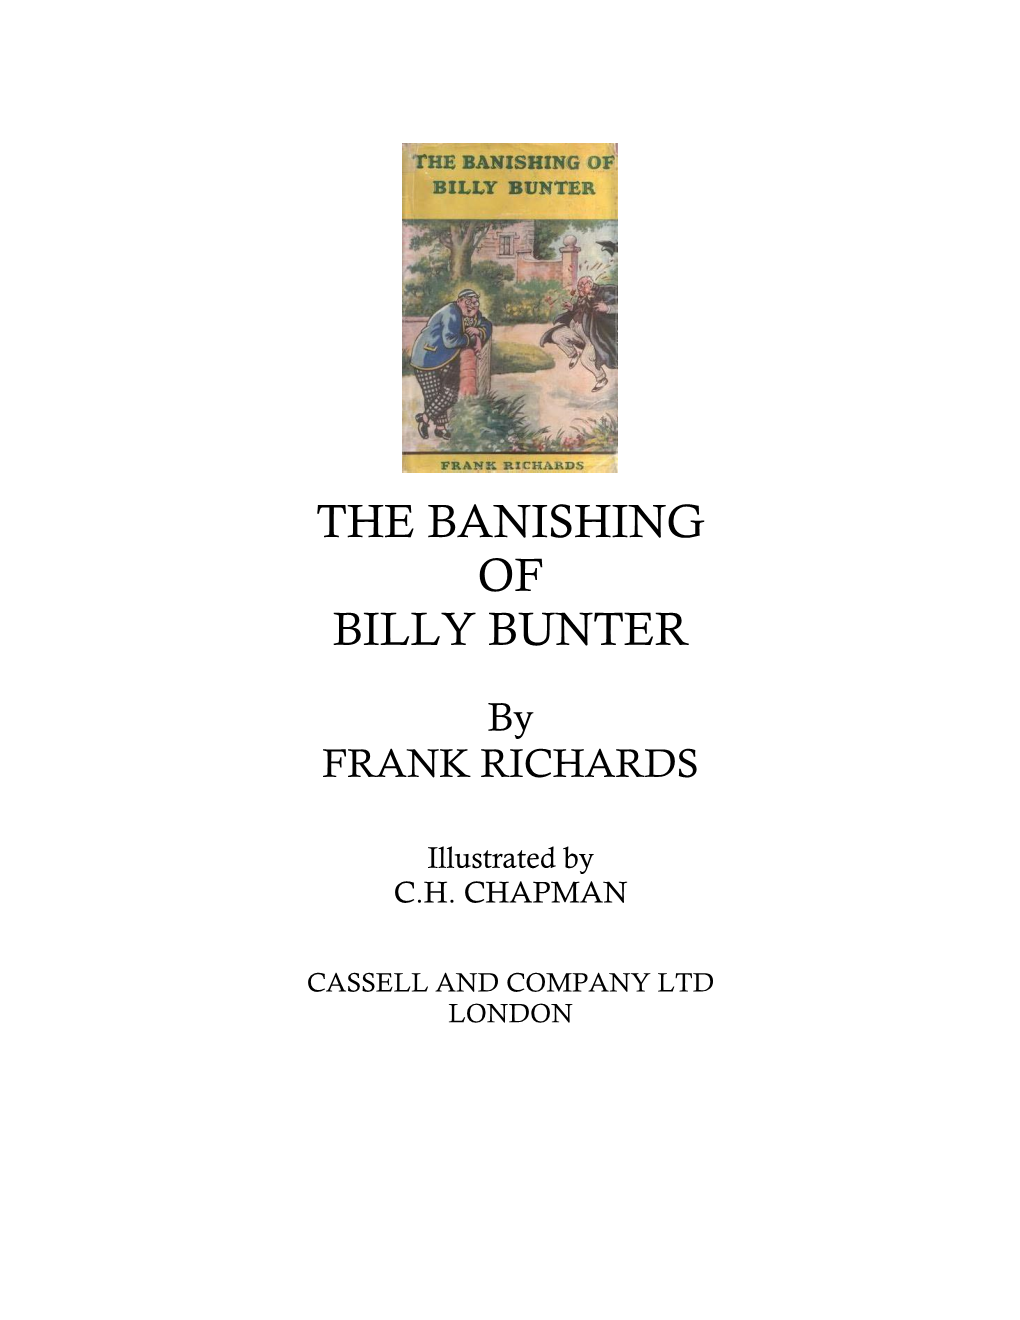 The Banishing of Billy Bunter